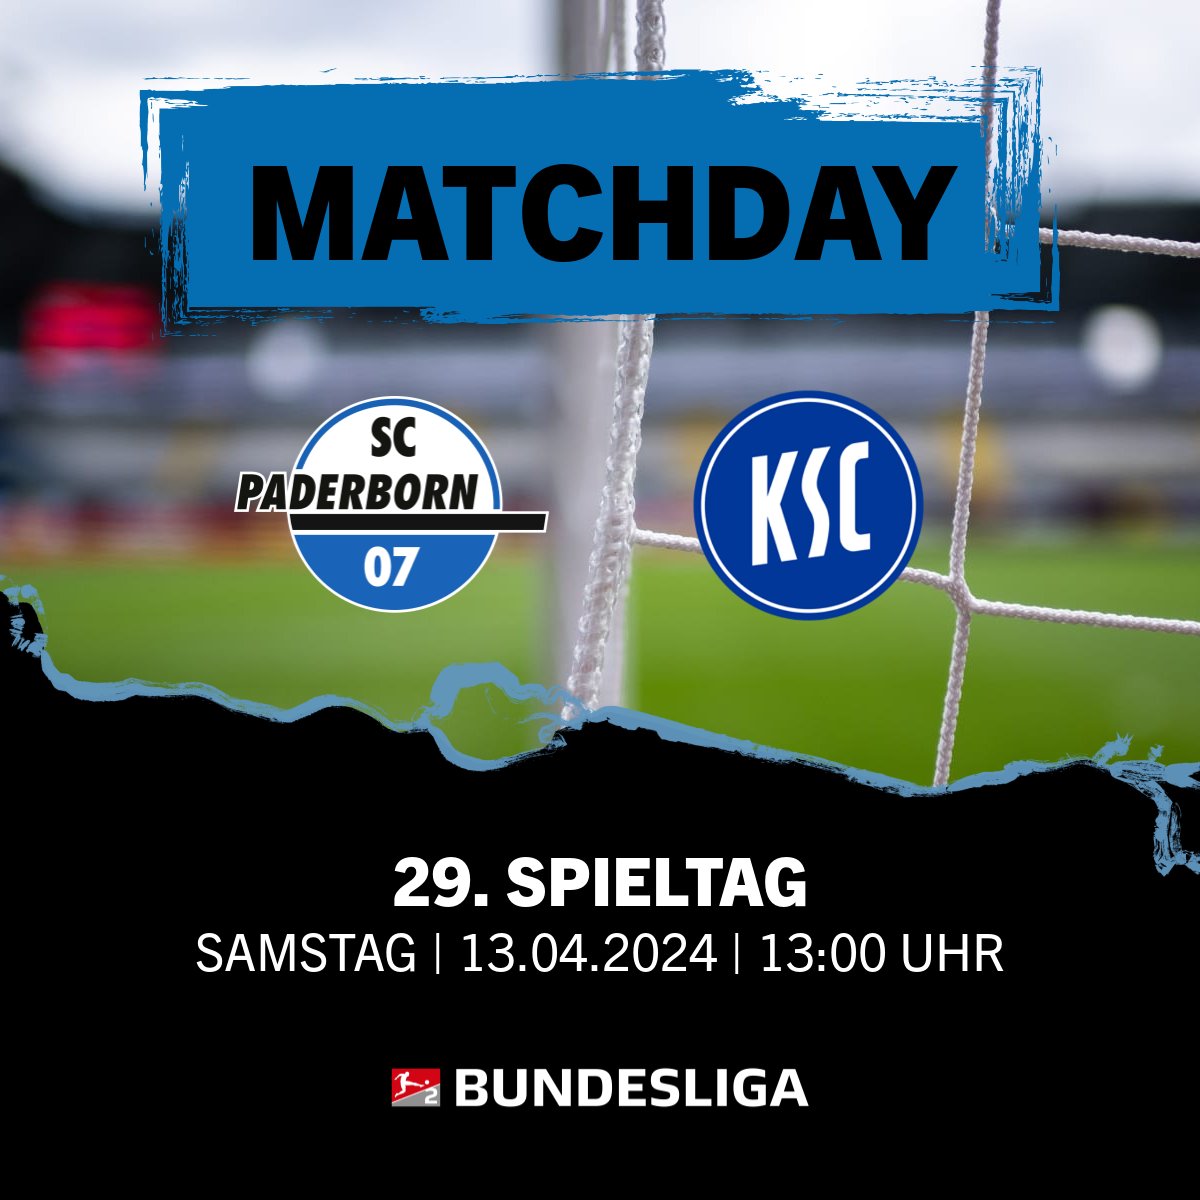 Matchday in der Home Deluxe Arena!🏟️ Am heutigen Samstag-Mittag empfangen wir den @KarlsruherSC in Paderborn zu unserem 15. Heimspiel der Saison. Anstoß ist um 13.00 Uhr, die Partie seht Ihr live bei @SkySportDE!📺👊 | #SCPKSC #SCP07